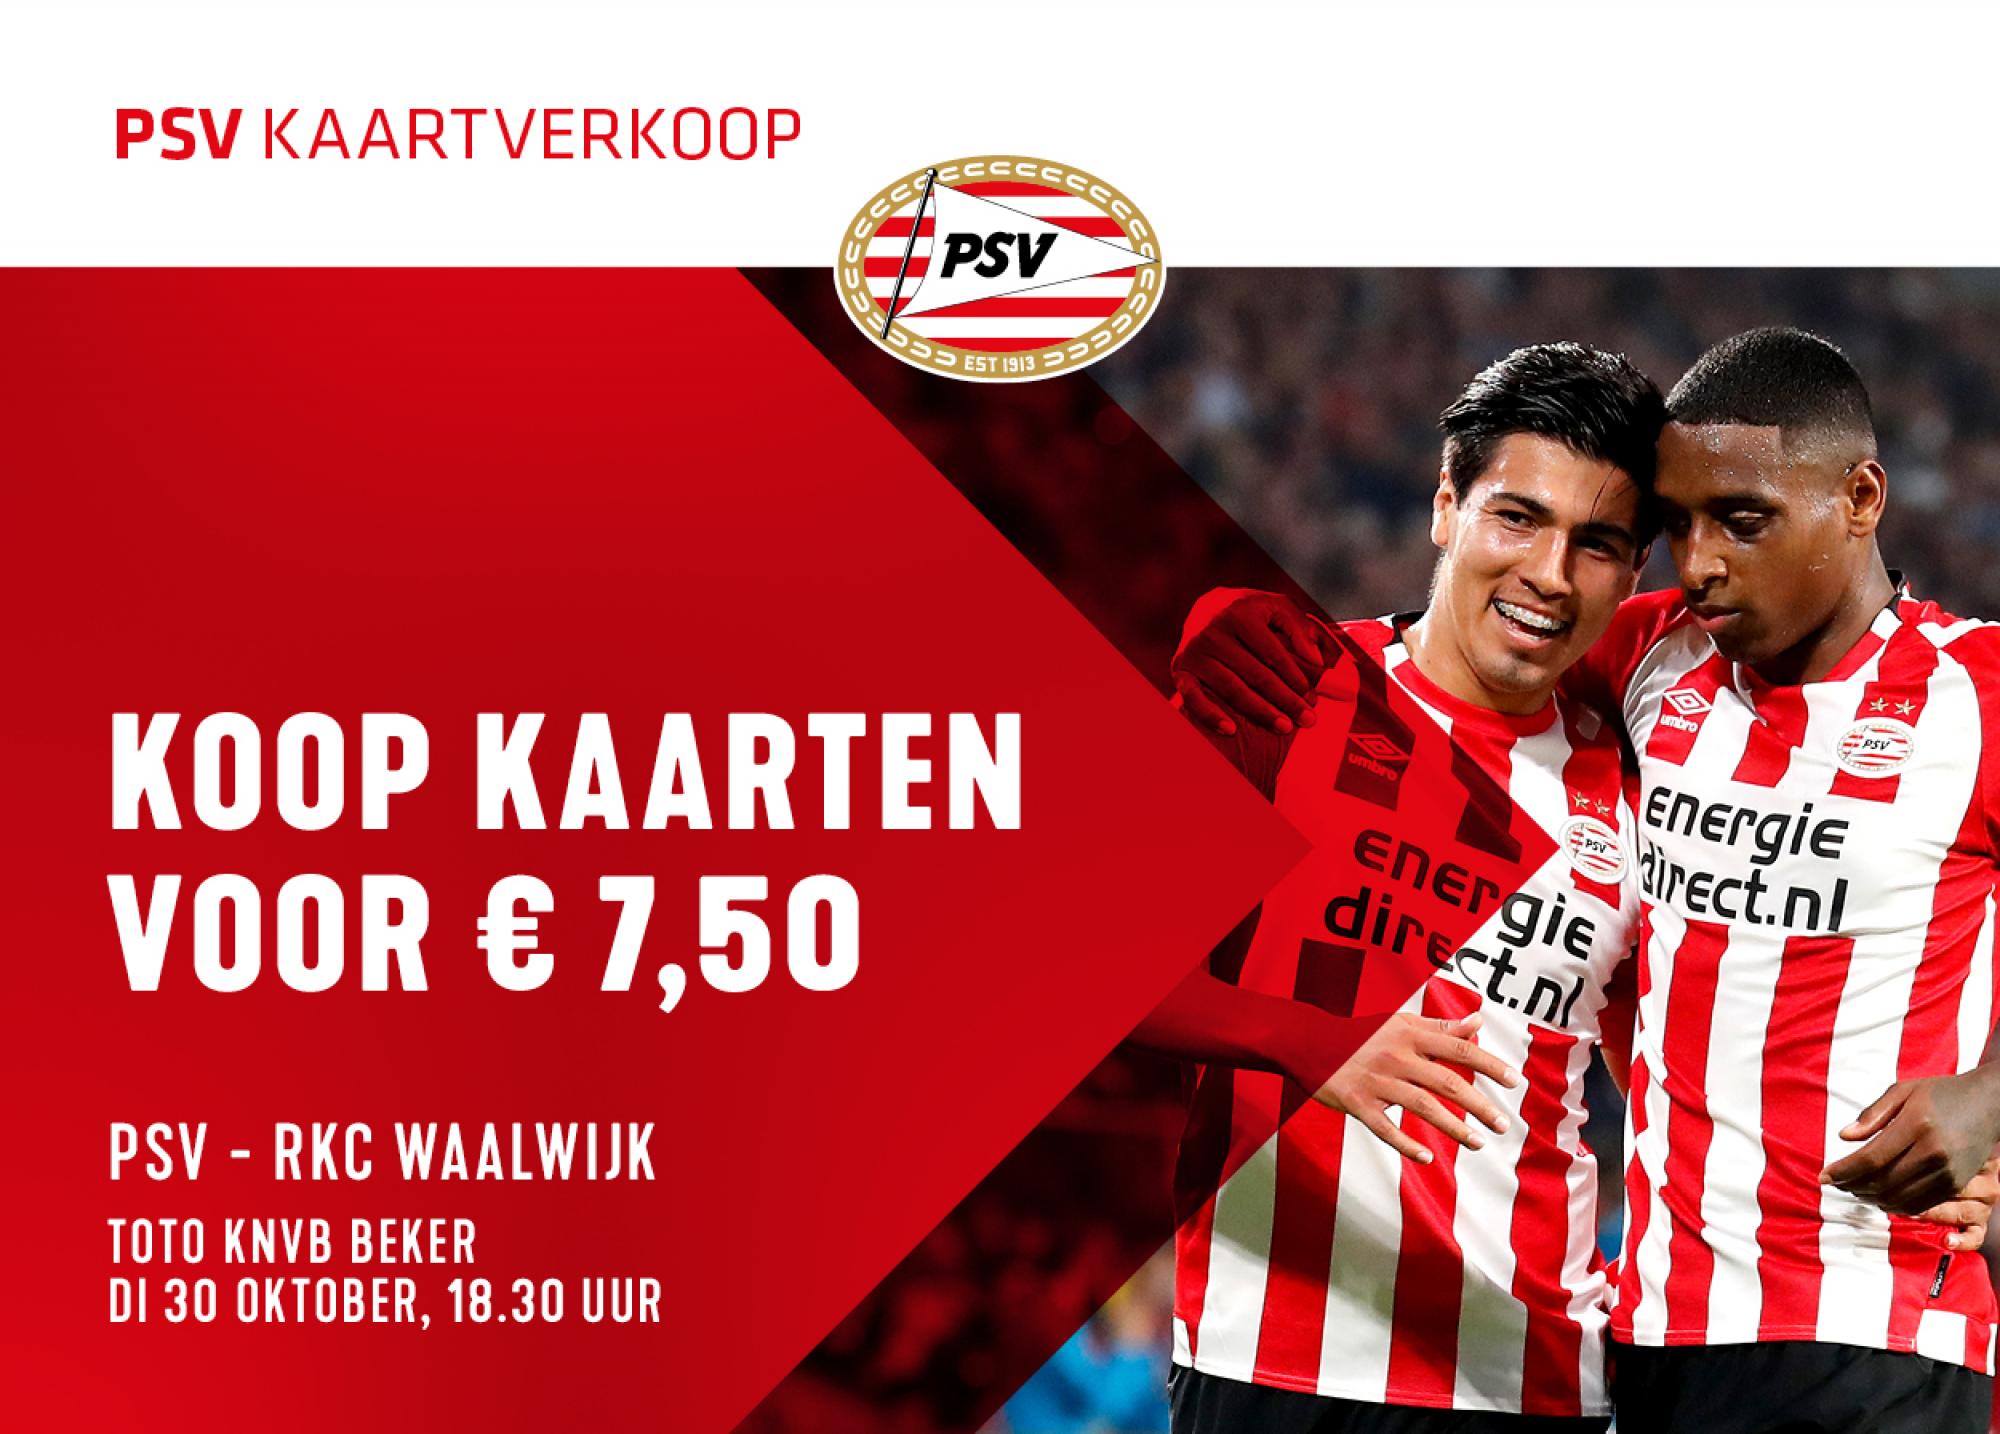 Disciplinair met de klok mee pen Voor € 7,50 naar PSV - RKC Waalwijk | RKsv Wittenhorst